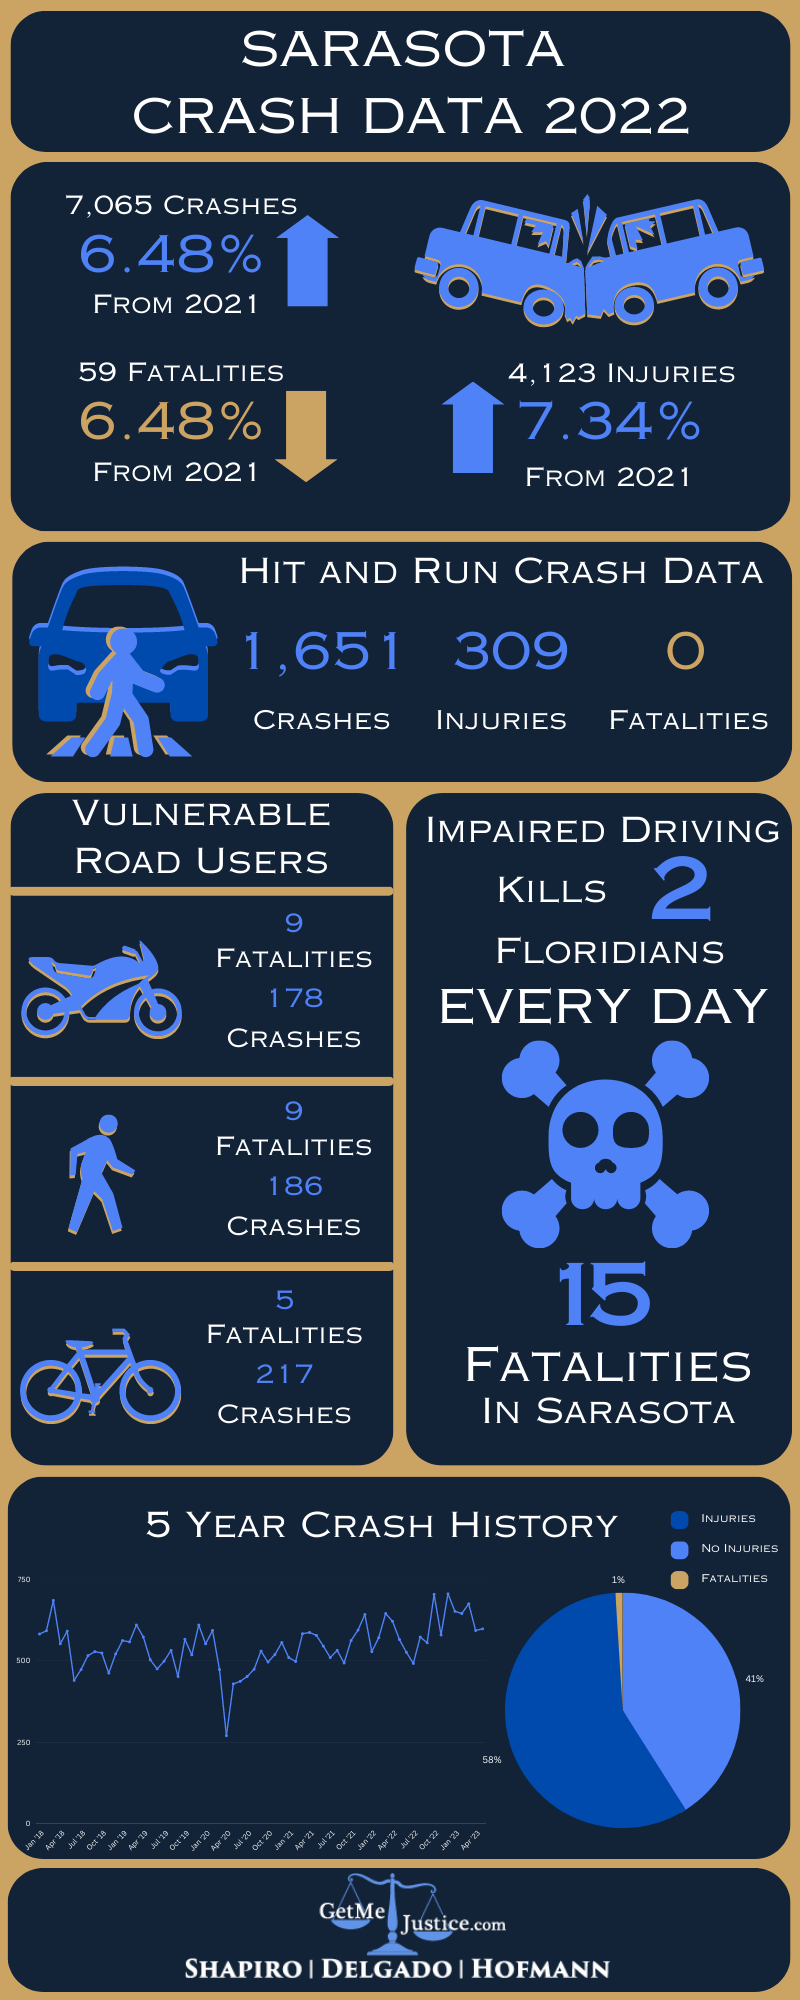 Infographic of sarasota crash data 2022